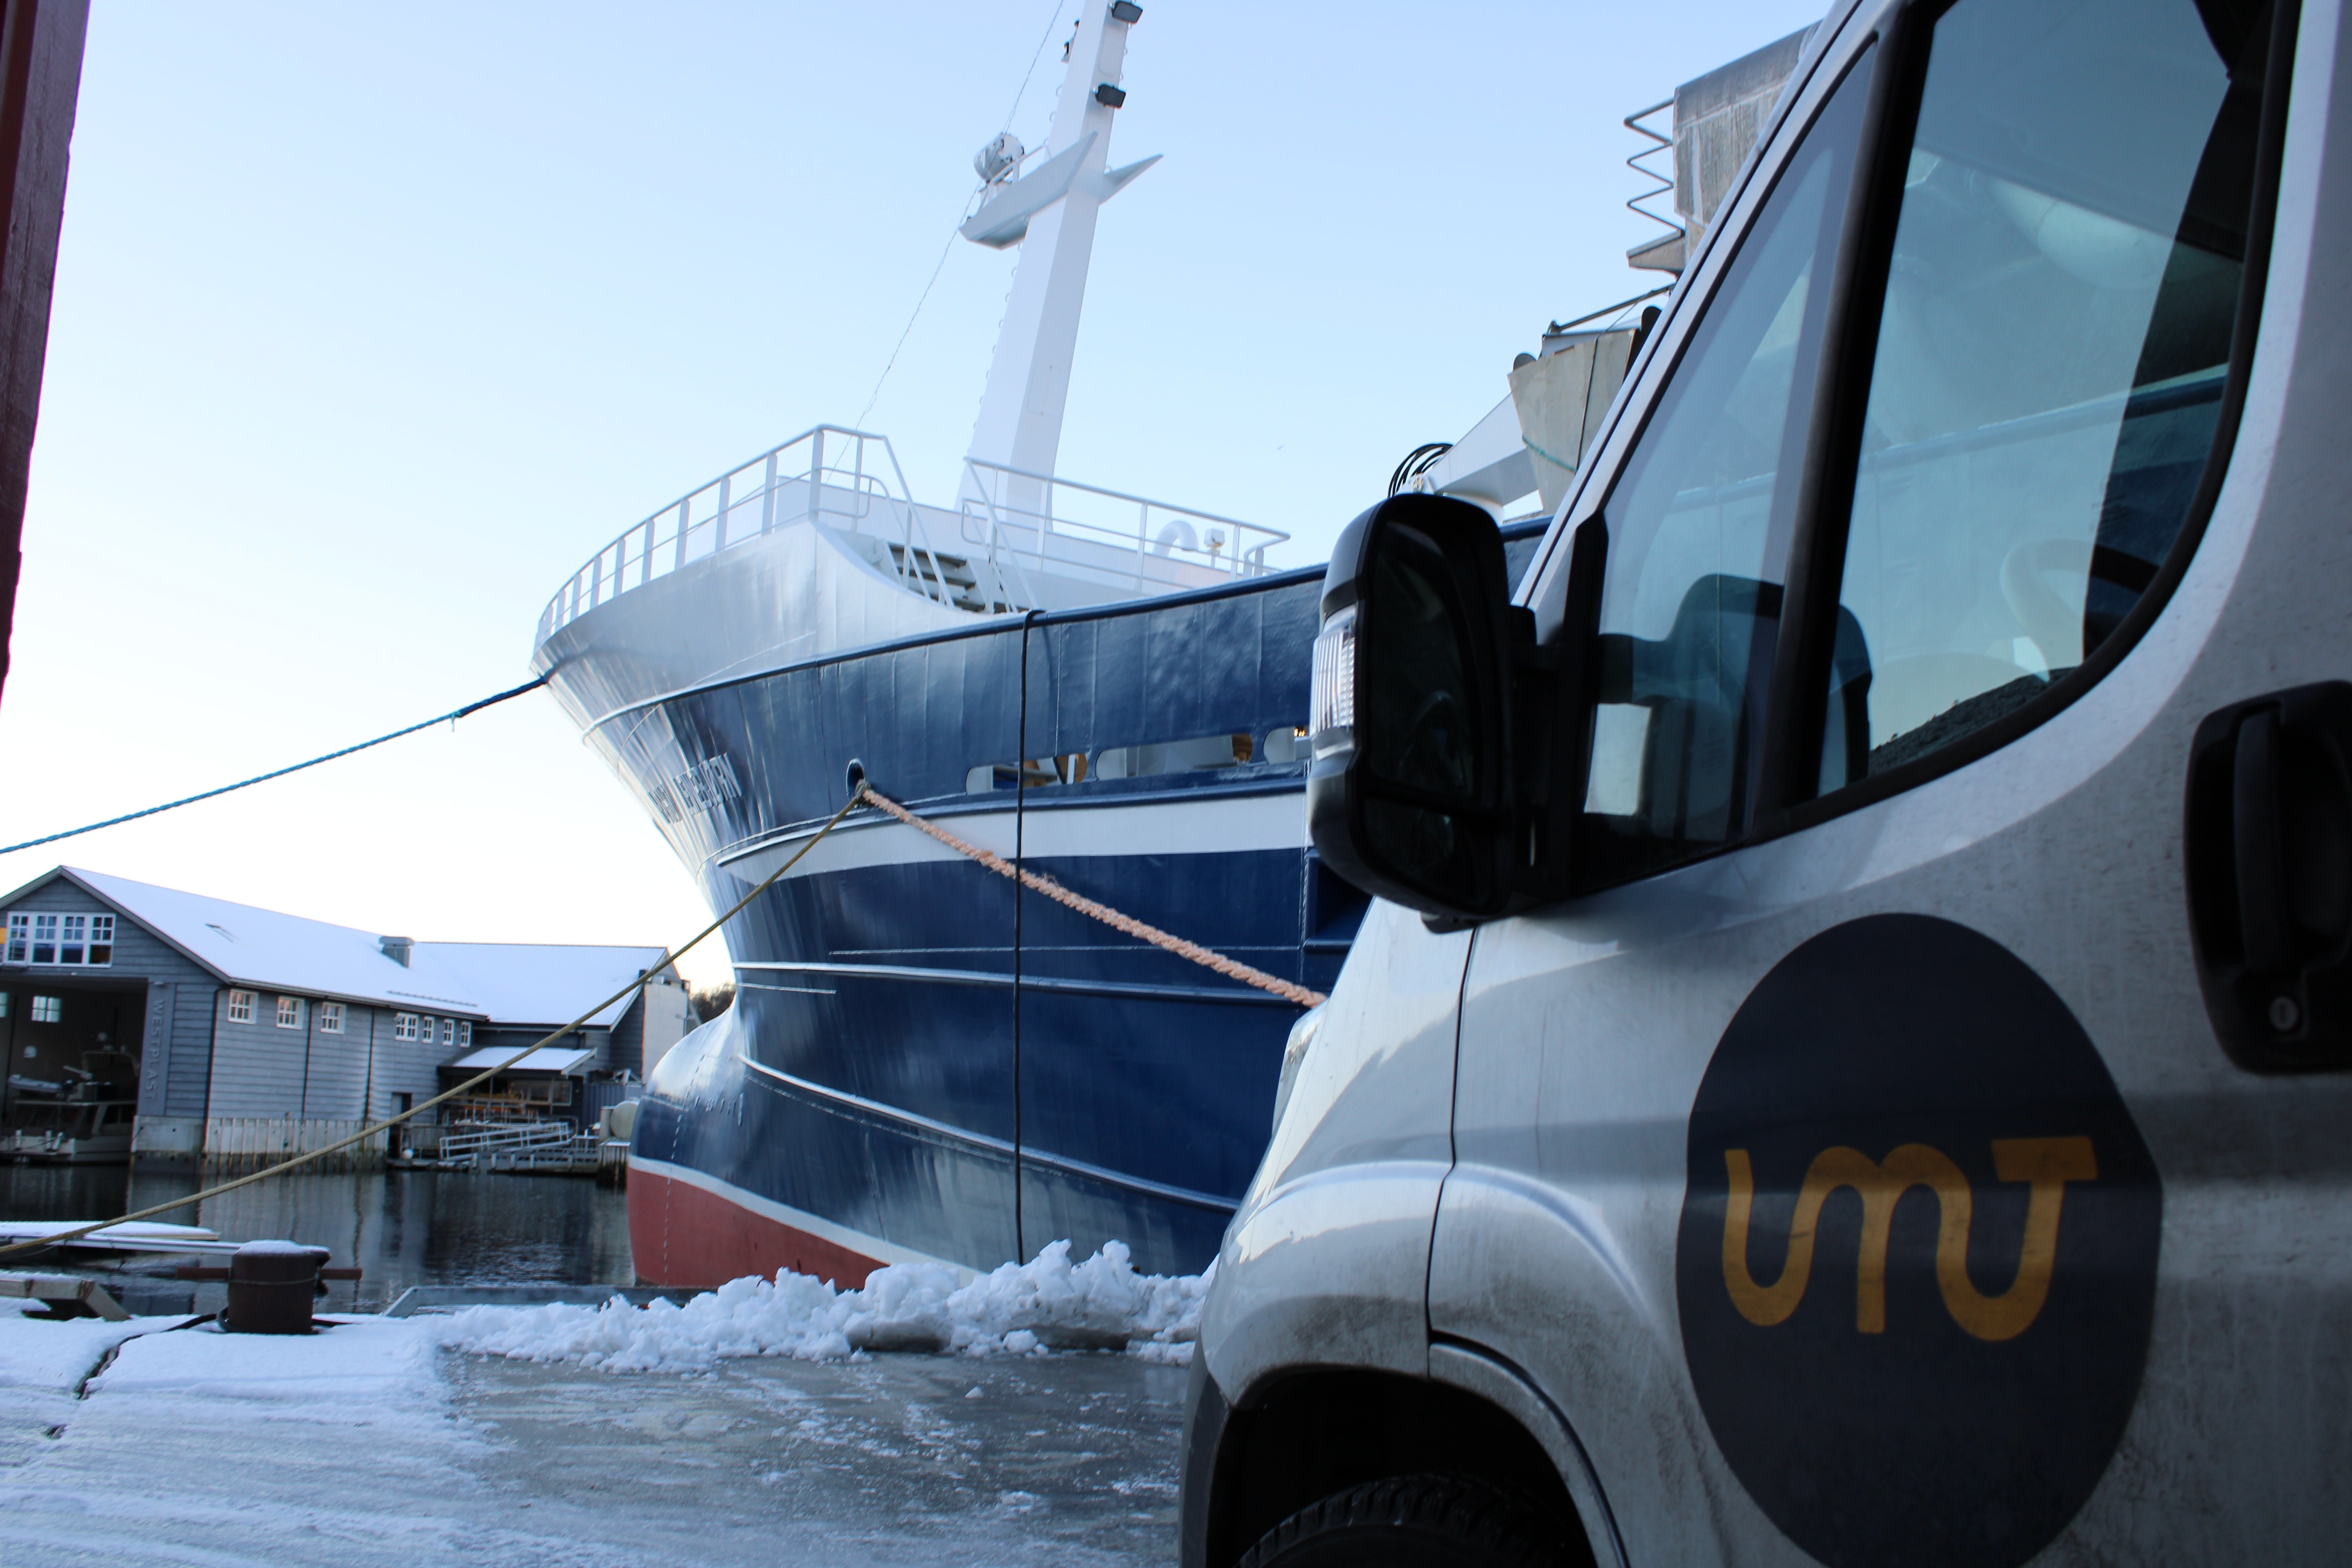 Grunnet økt oppdragsmengde søker vi Service Coordinator til vår avdeling i Tromsø